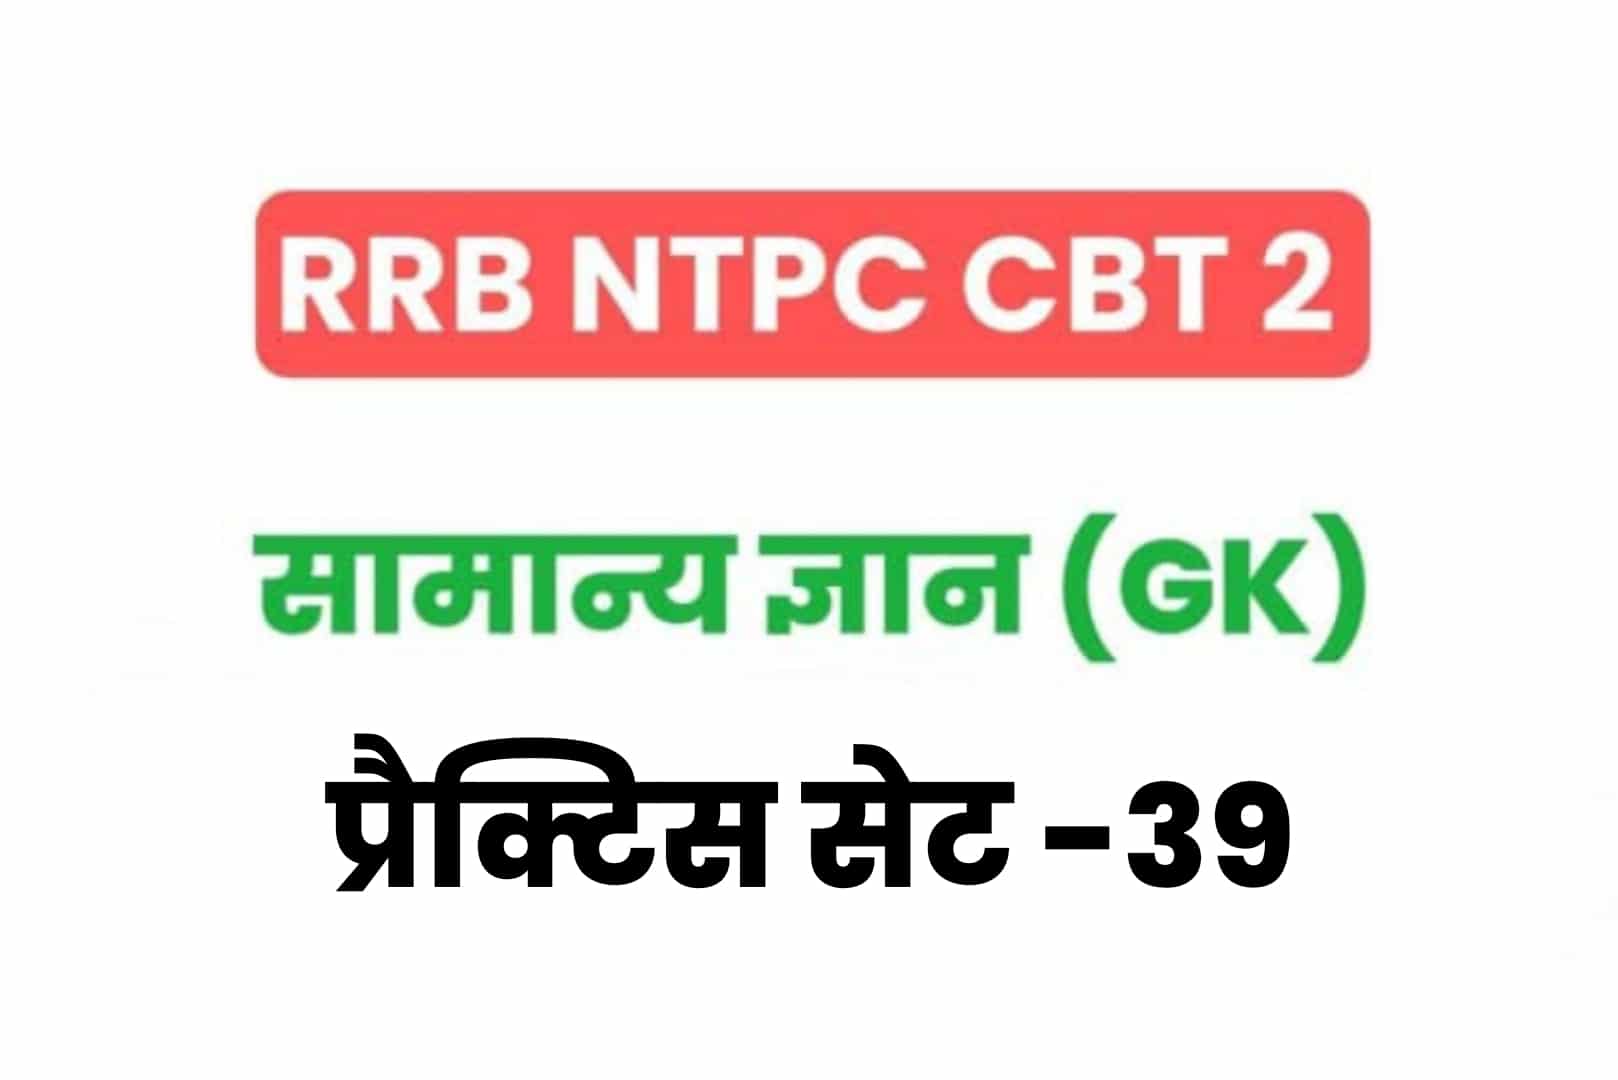 RRB NTPC CBT 2 GK प्रैक्टिस सेट 39: परीक्षा से पहले अवश्य पढें सामान्य ज्ञान के 25 मुख्य MCQ